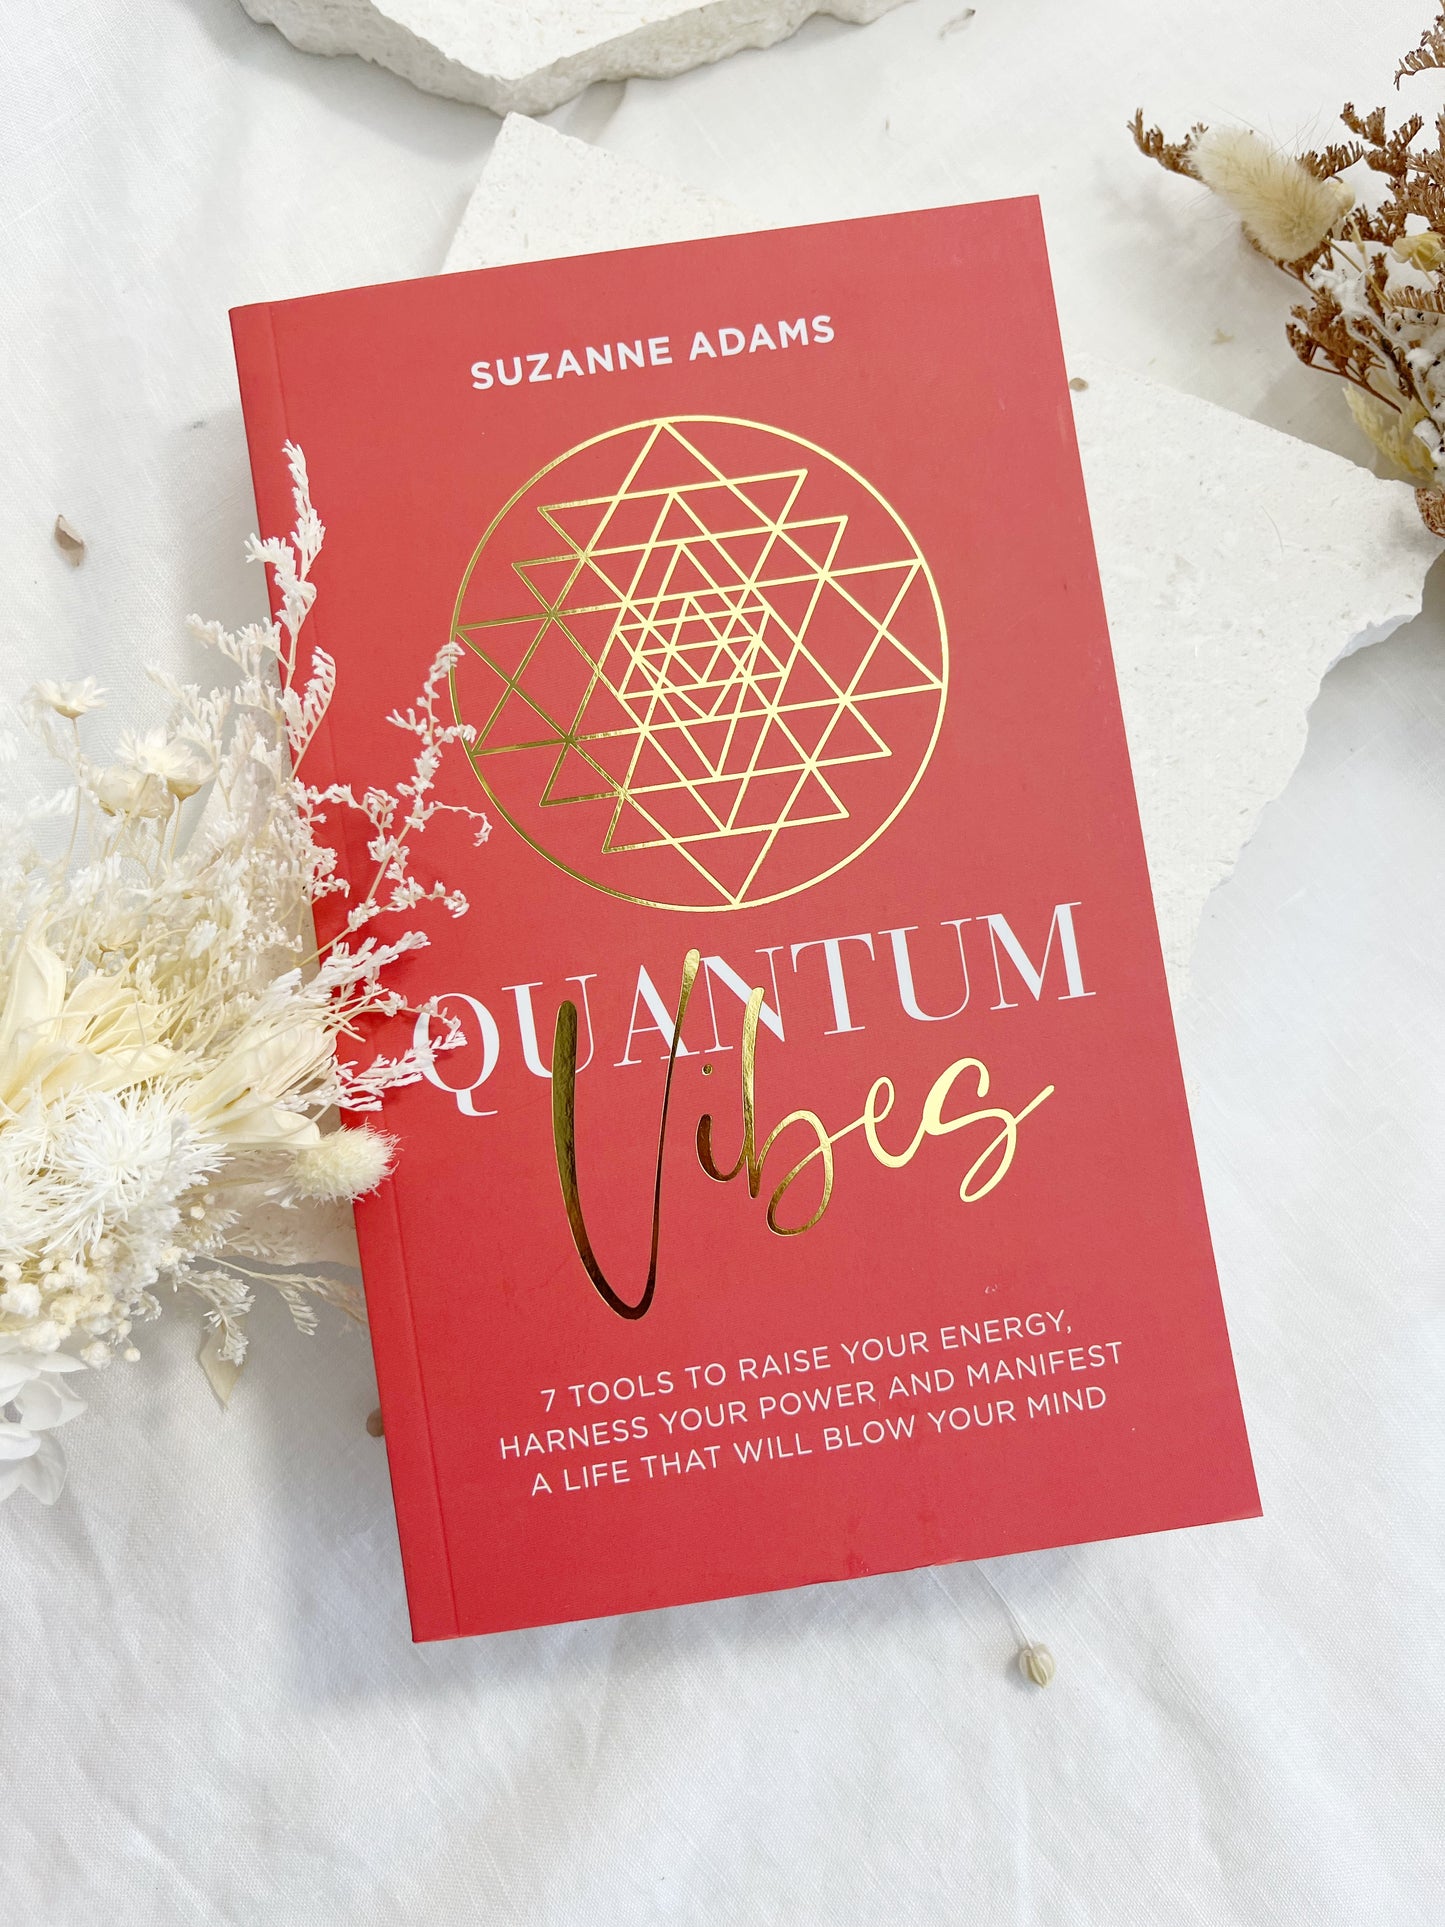 QUANTUM VIBES | SUZANNE ADAMS